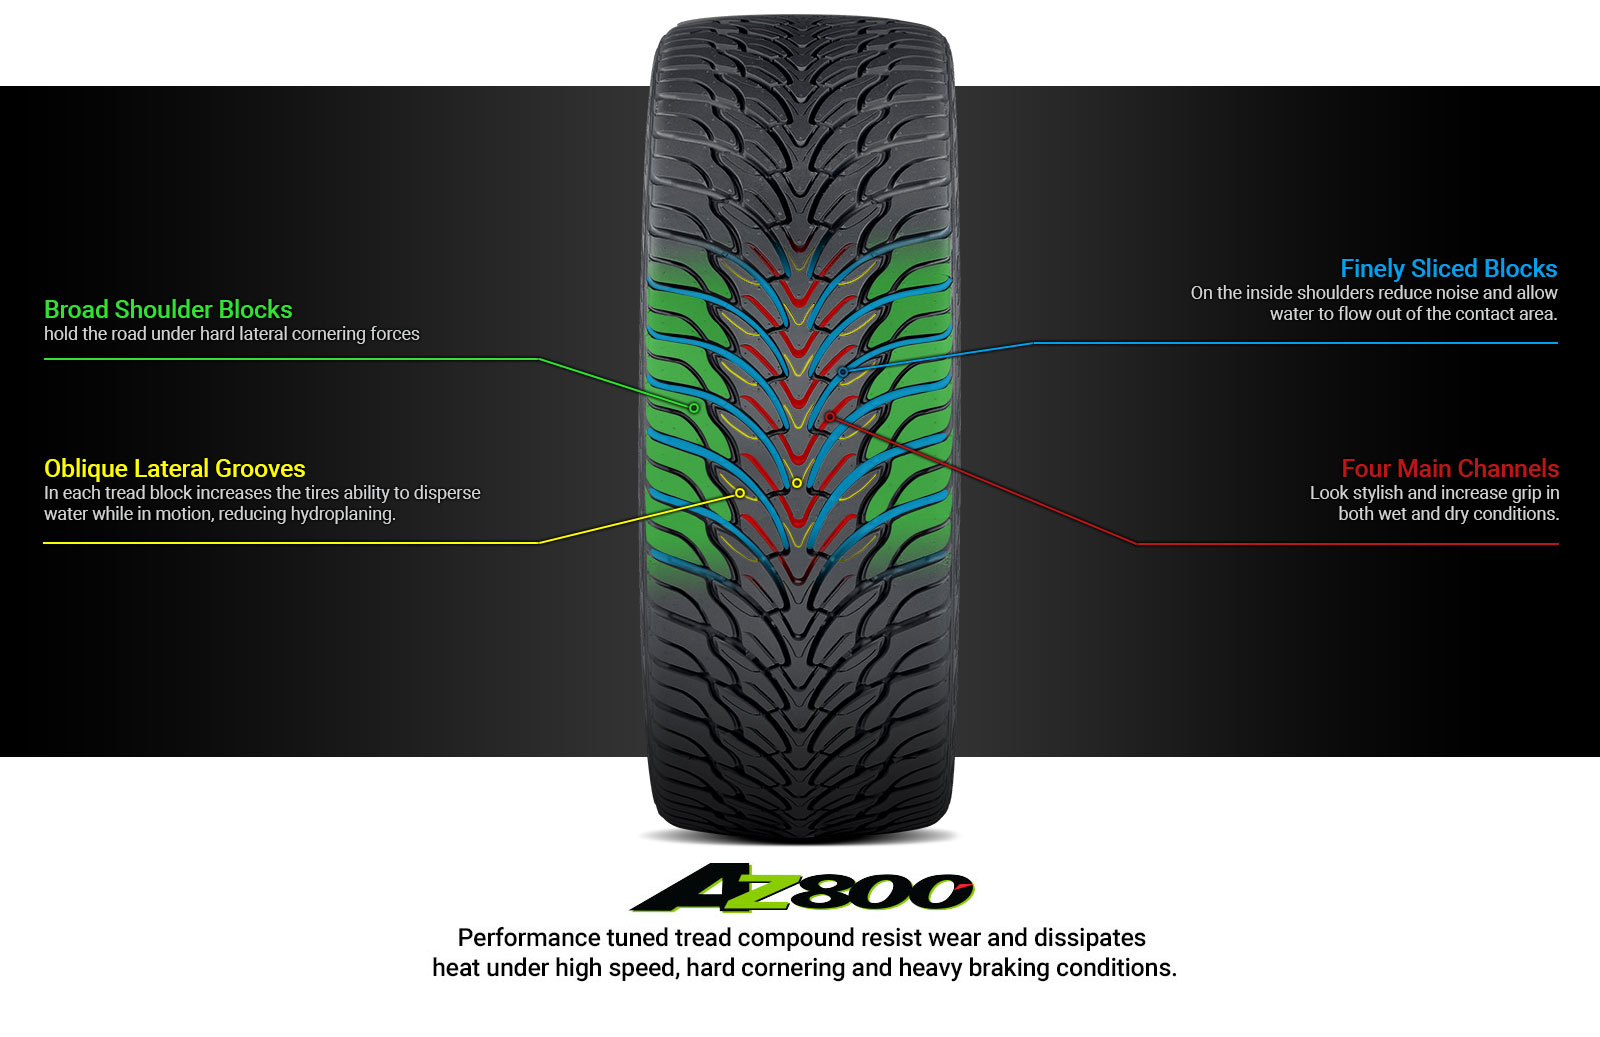 AZ800 Tire Technology